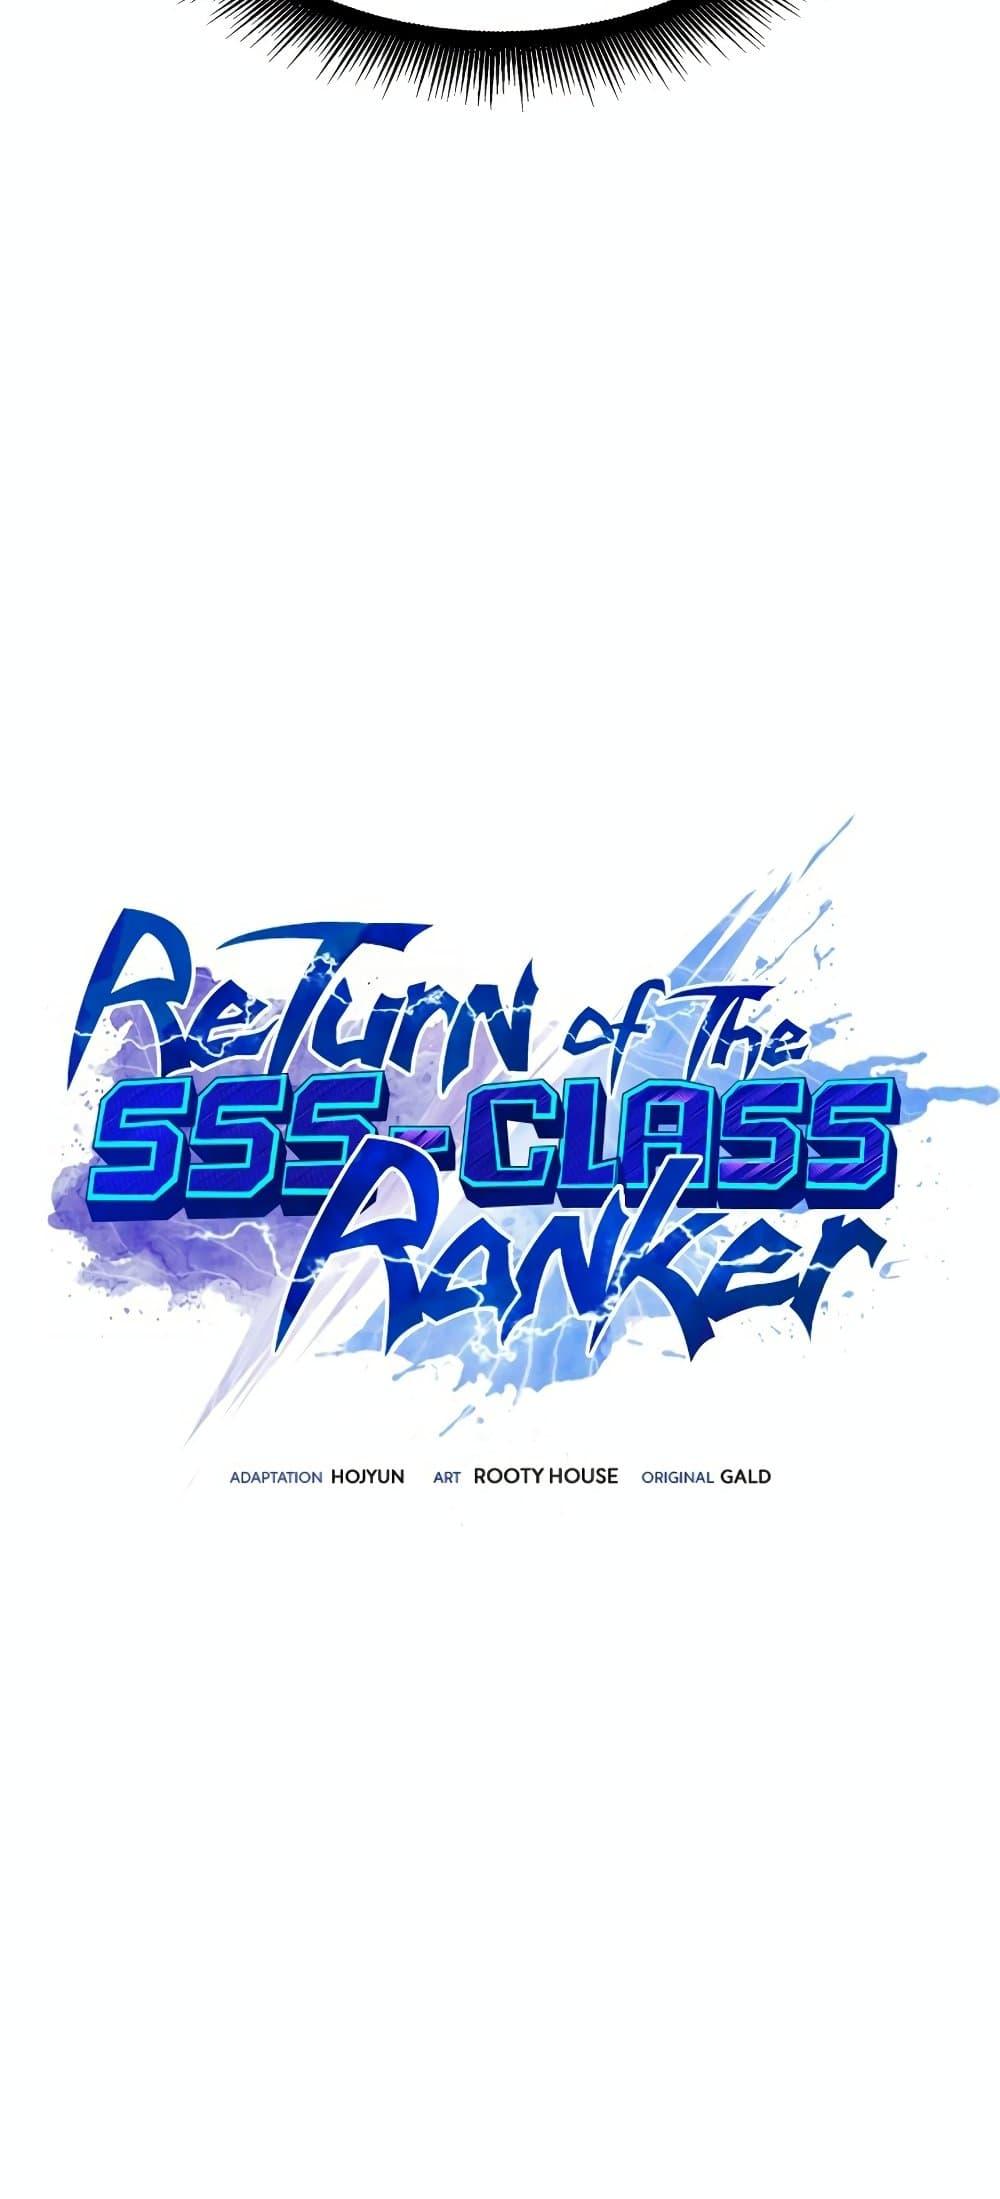 Return of the SSS Class Ranker 29 19